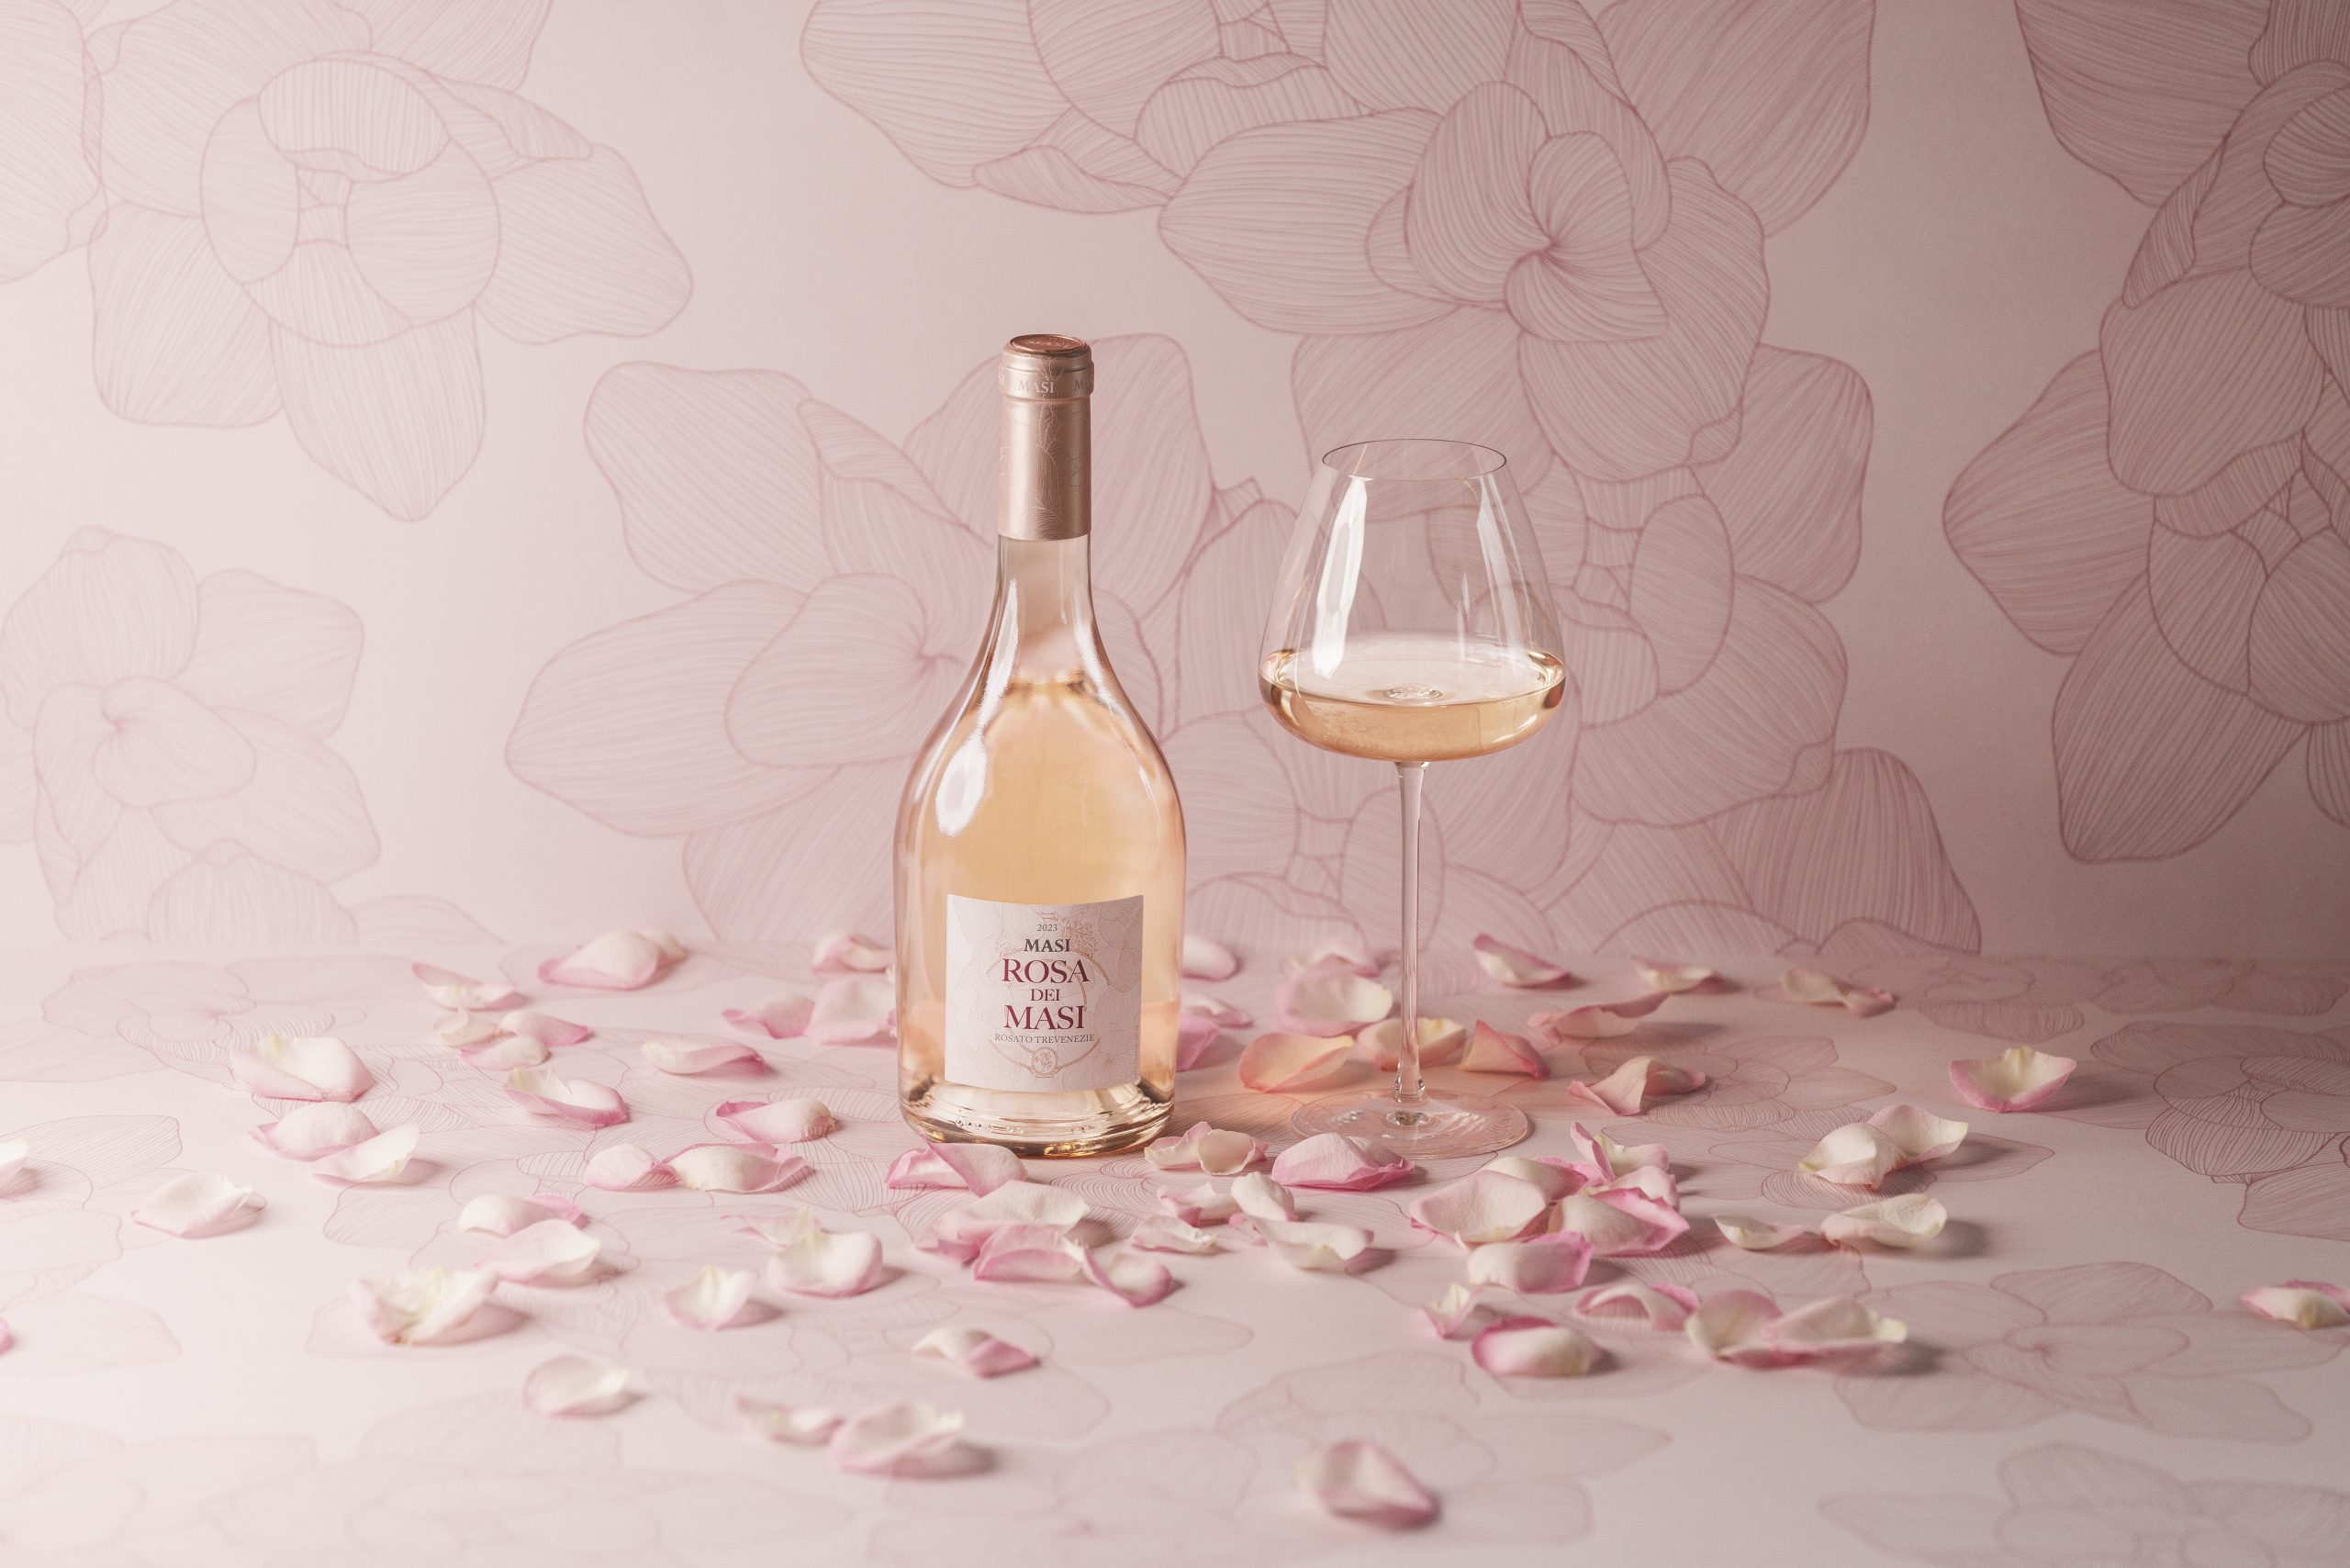 Una botella del nuevo Rosa dei Masi junto a una copa de vino. Hay pétalos de rosa esparcidos y el fondo rosa pálido tiene los mismos motivos de rosas dibujados con tinta que la botella.